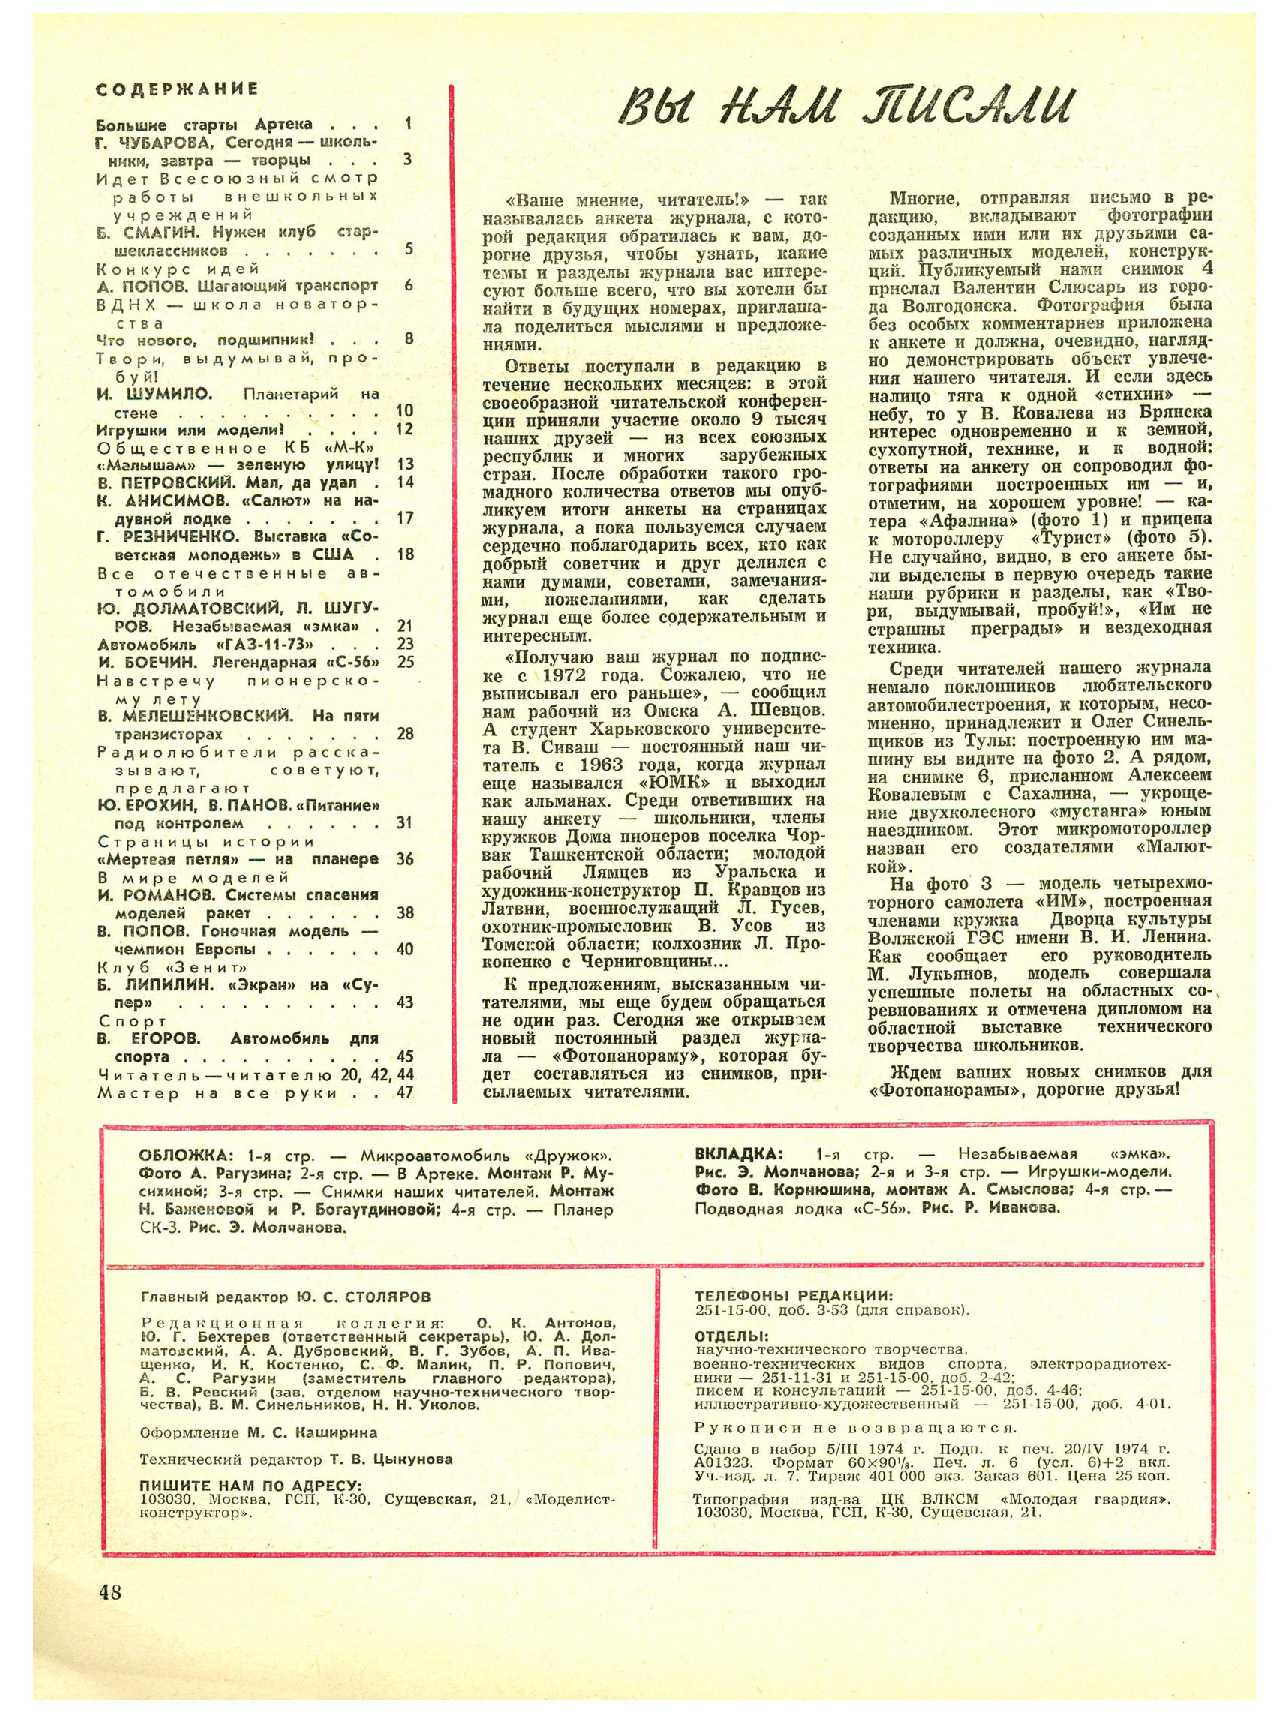 МК 5, 1974, 48 c.